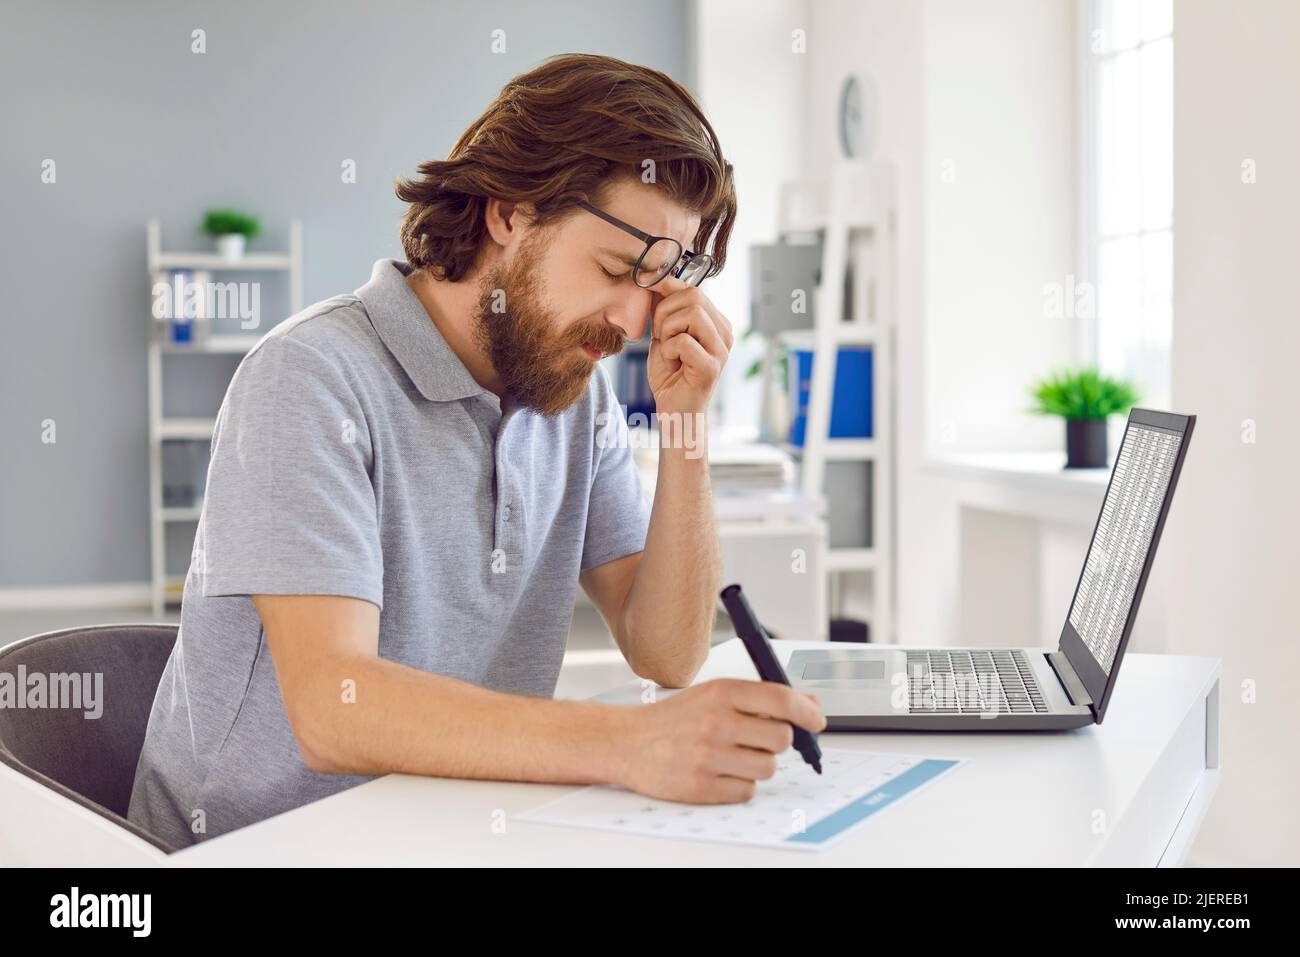 Der müde Mann ist überarbeitet und hat Schmerzen in den Augen, wenn er im Büro am Laptop arbeitet. Stockfoto